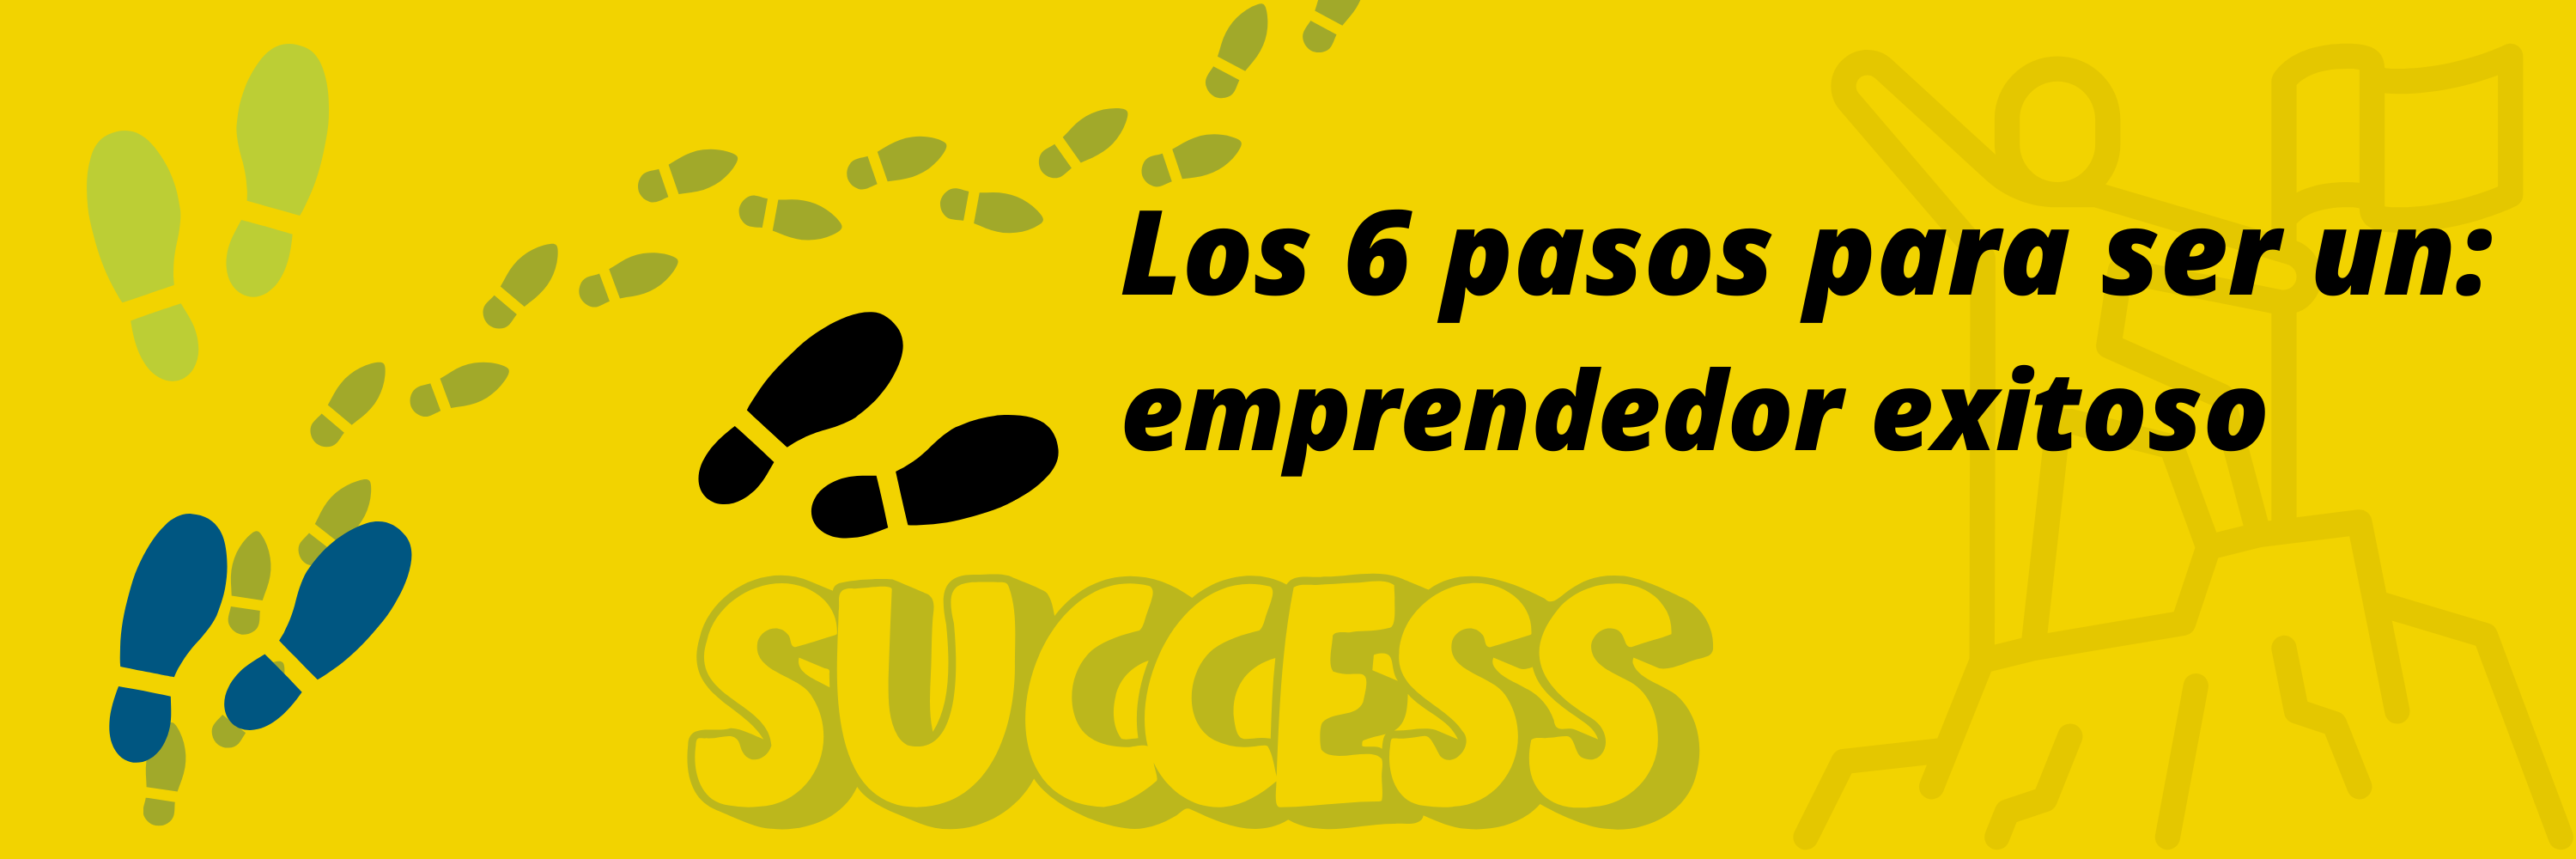 Los 6 pasos para ser un: emprendedor exitoso Dr. Francisco Jose Velandia Soto UCAB UNA UBA